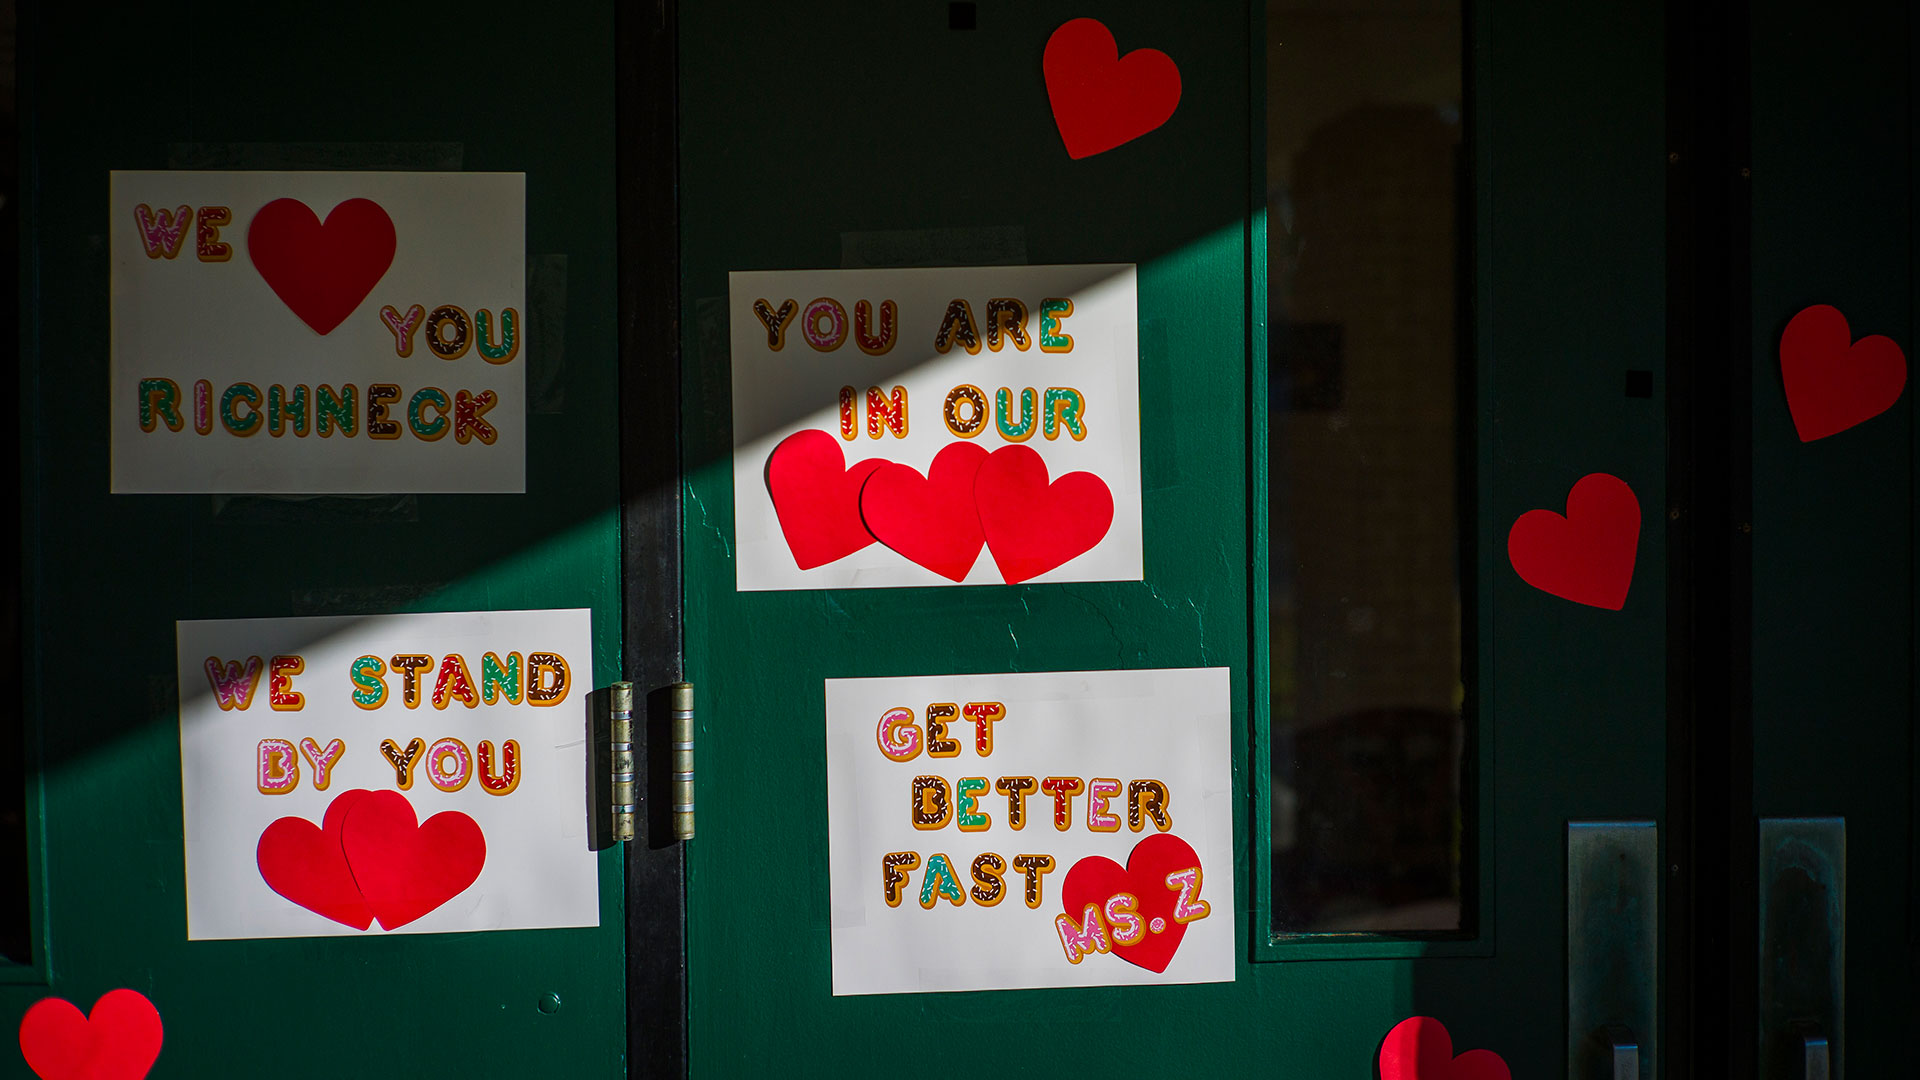 ARCHIVO - Mensajes de apoyo para la maestra Abby Zwerner, quien recibió un disparo de un estudiante de 6 años, adornan la puerta principal de la escuela primaria Richneck Newport News, Virginia, el 9 de enero de 2023.  (Foto AP/John C. Clark, archivo)

